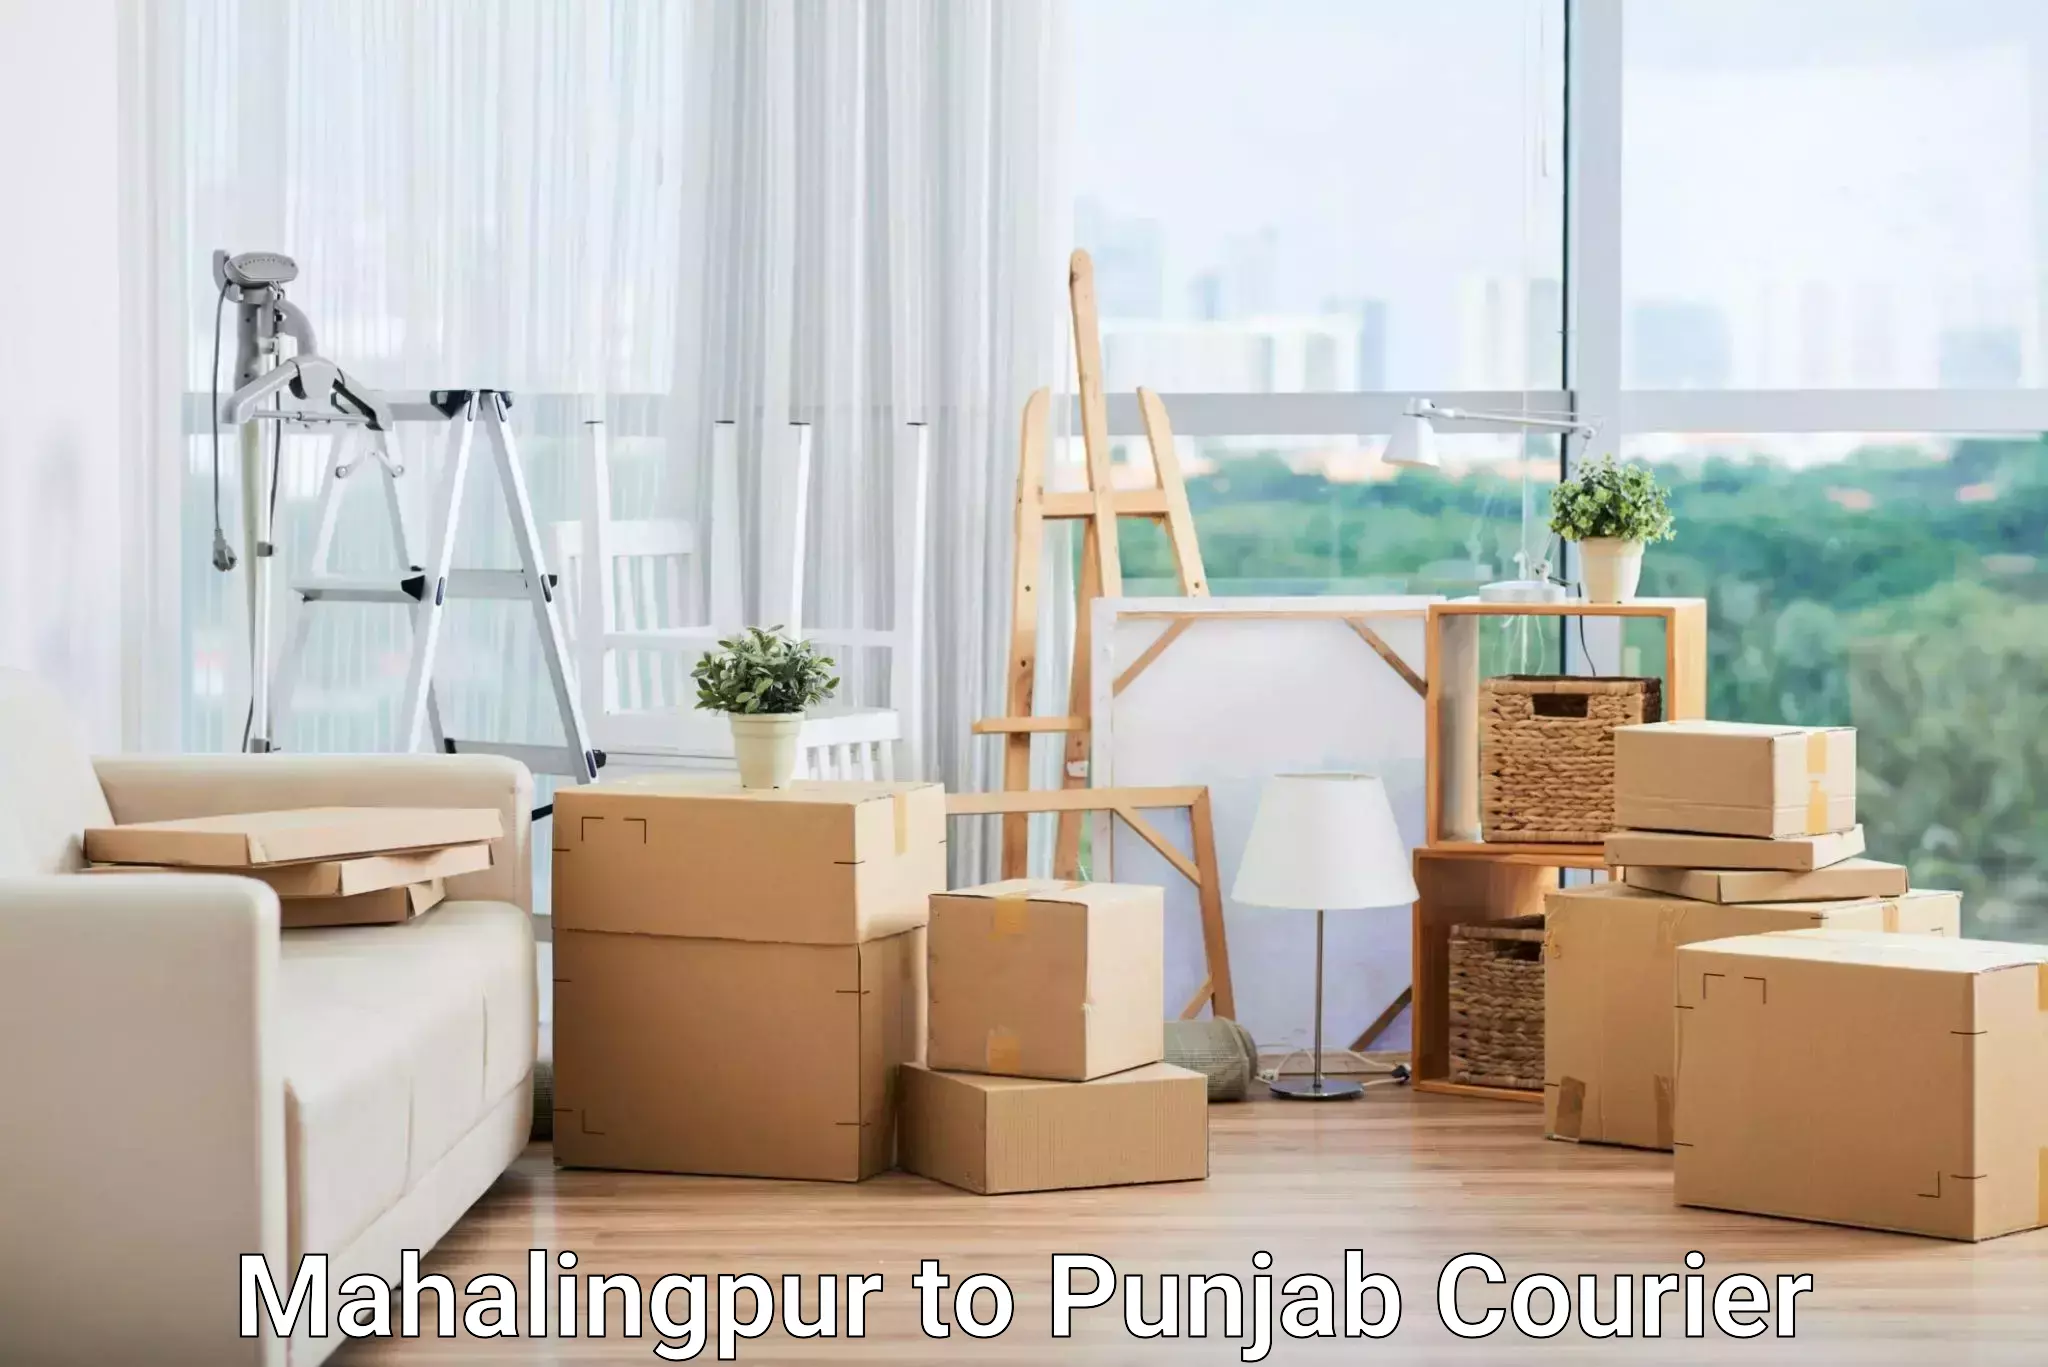 Advanced shipping network Mahalingpur to Punjab